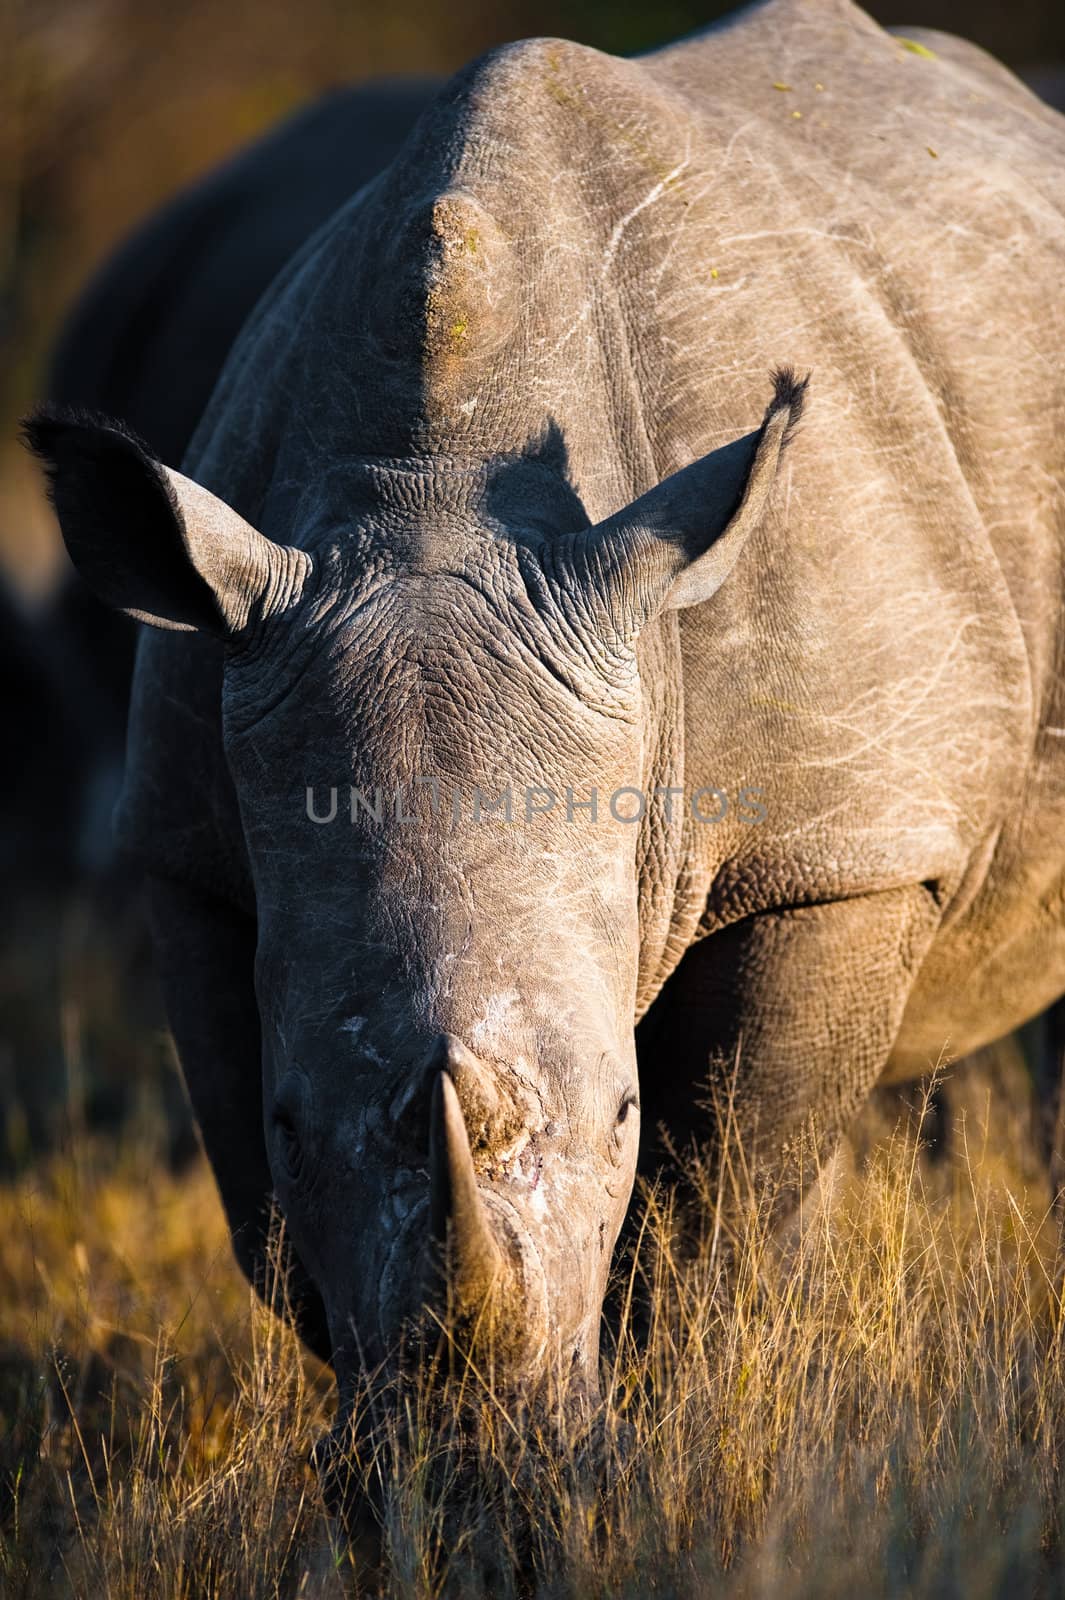 A southern white rhinoceros (Ceratotherium simum simum) grazing